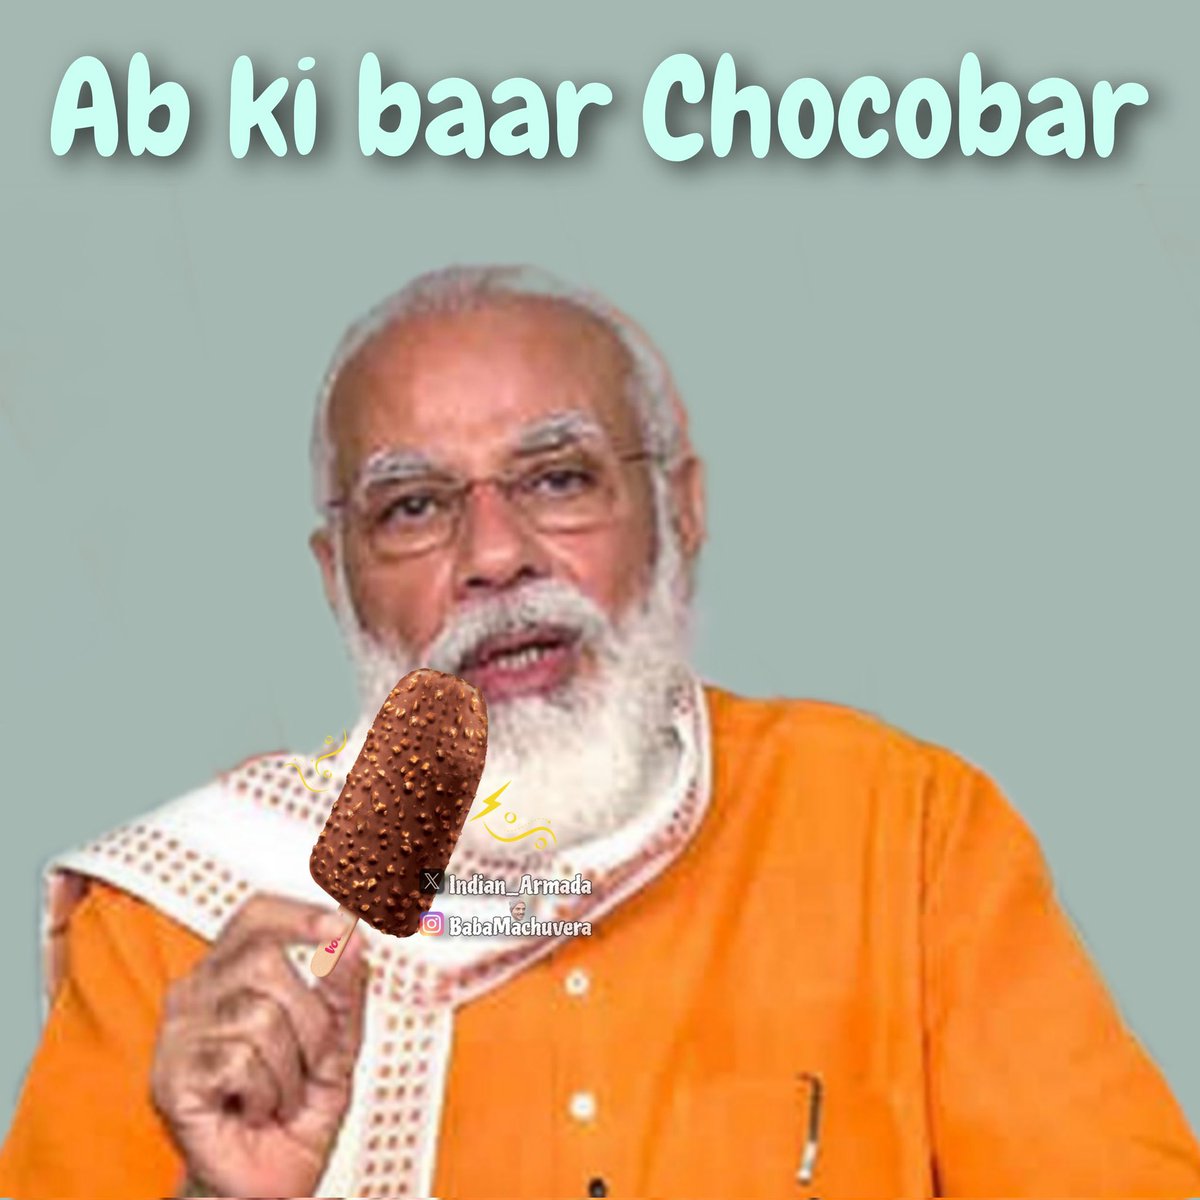 భాజపా ఓటమి తథ్యం!
#AbkiBaarChocobar 💯